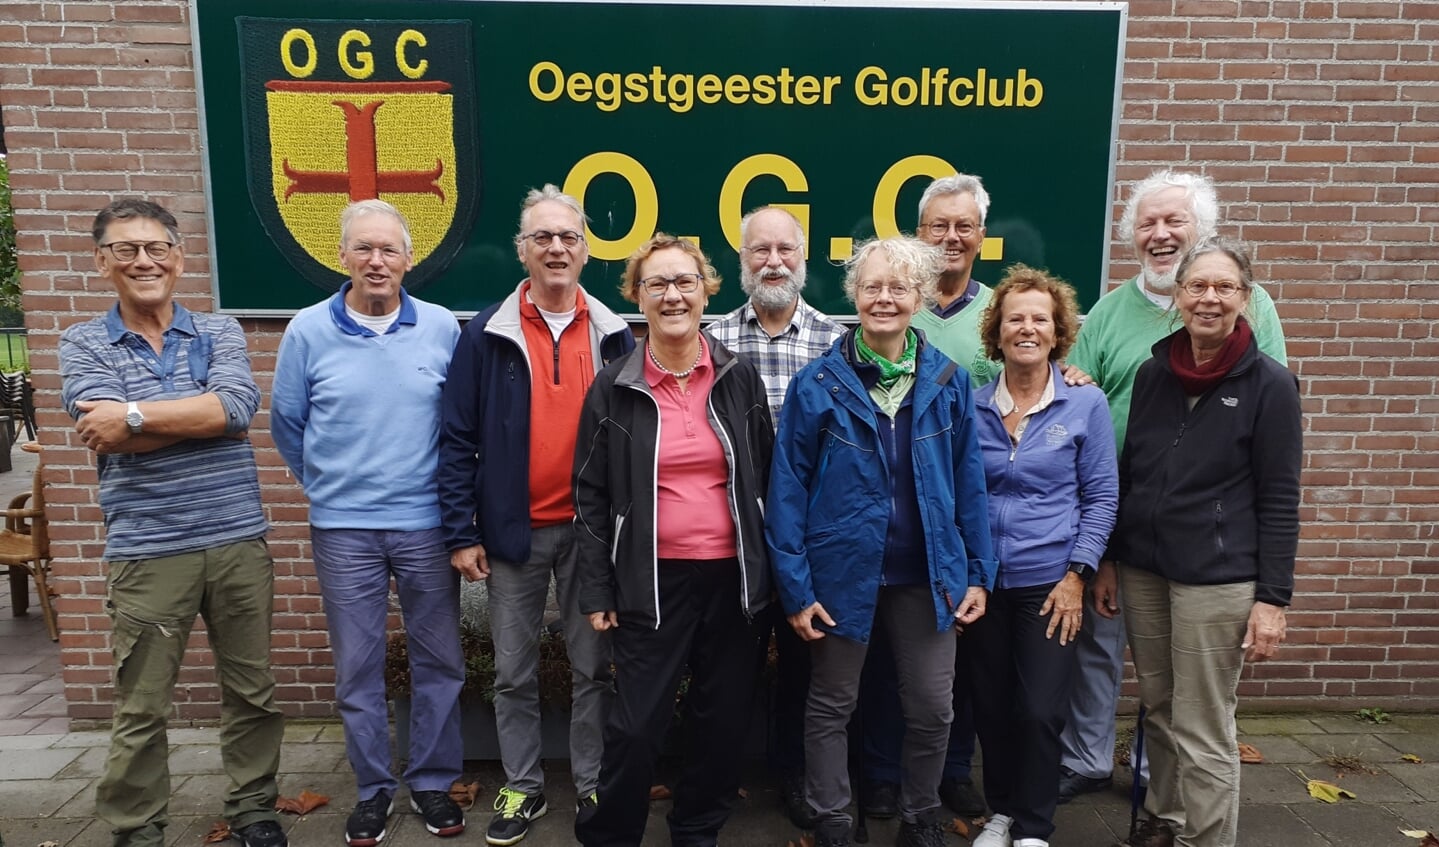 De delegatie uit Liemeer bij de Oegstgeester Golfclub op bezoek.